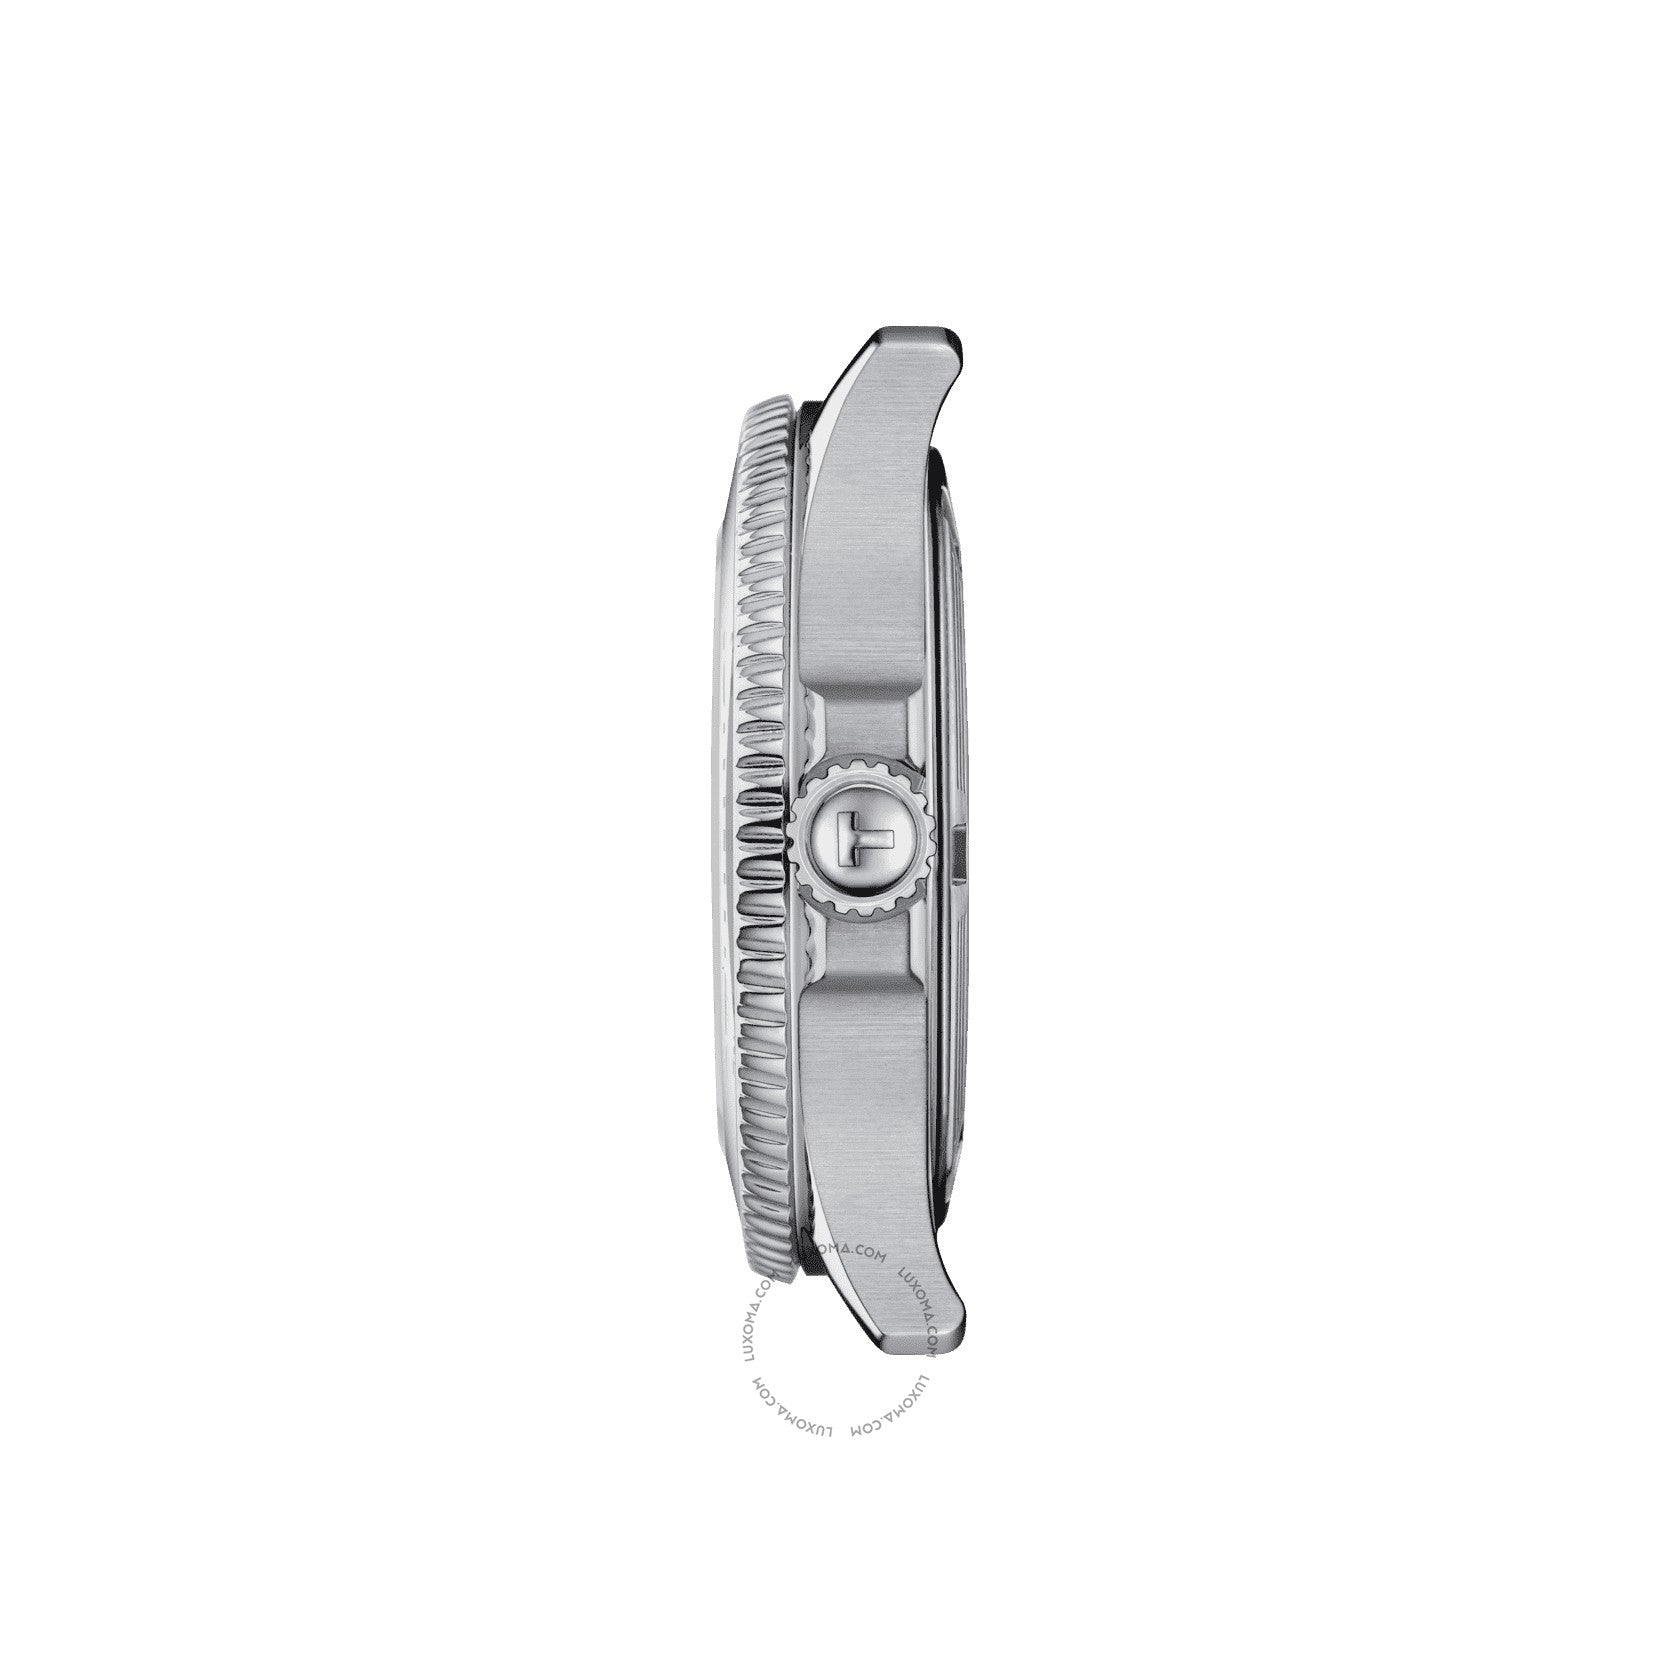 Tissot Tissot Seastar Quartz White Dial Men's Watch T120.210.11.011.00